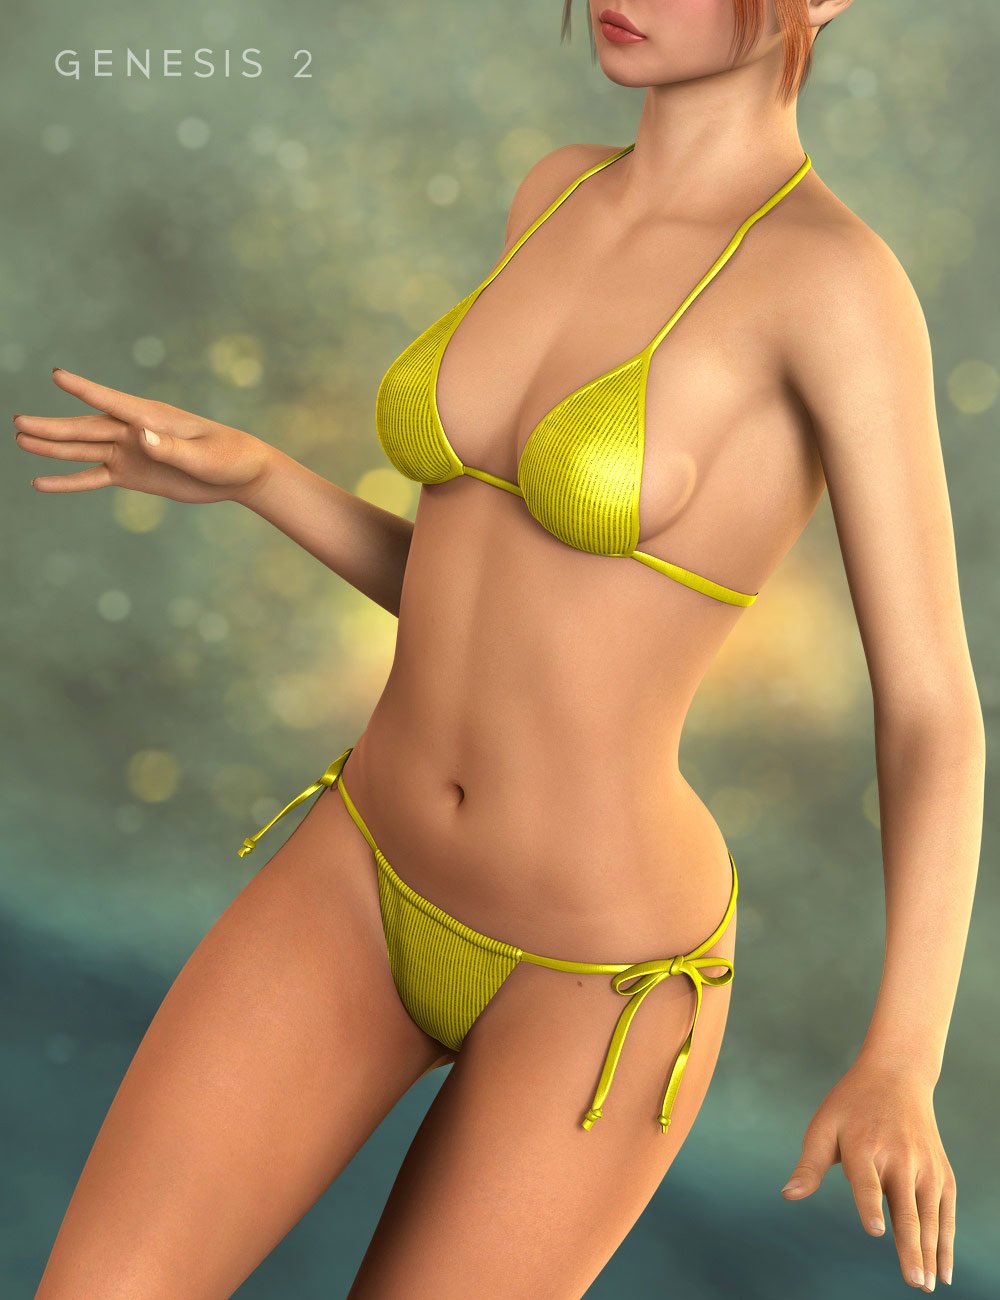 Iridessa by: CountessJessaii, 3D Models by Daz 3D